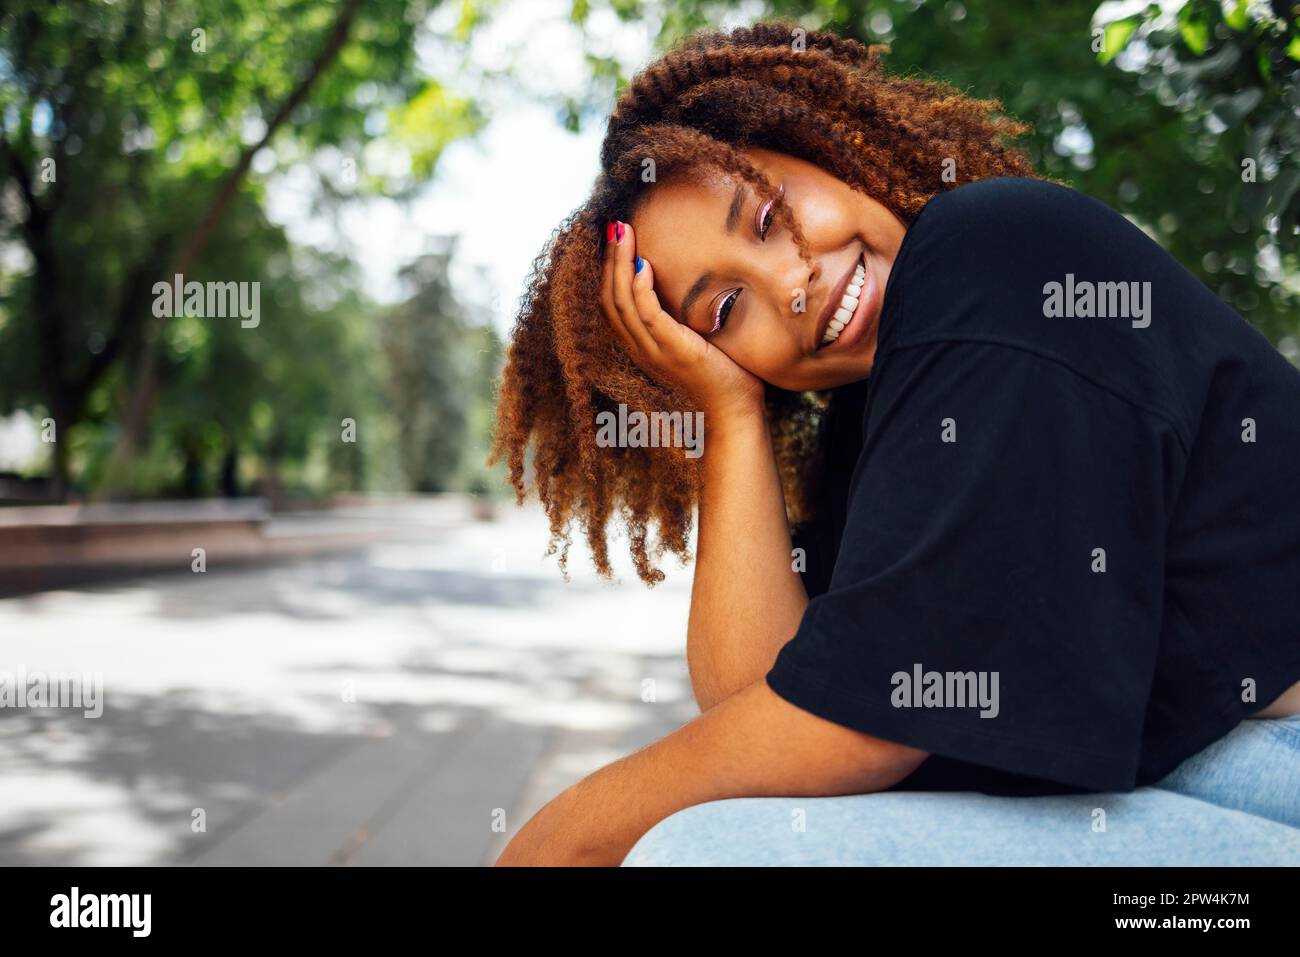 Nahaufnahme Foto von welligen Frisur charmant fröhlich dunkle Haut Person haben gute Laune schönes Sightseeing-Wochenende im Freien Stockfoto